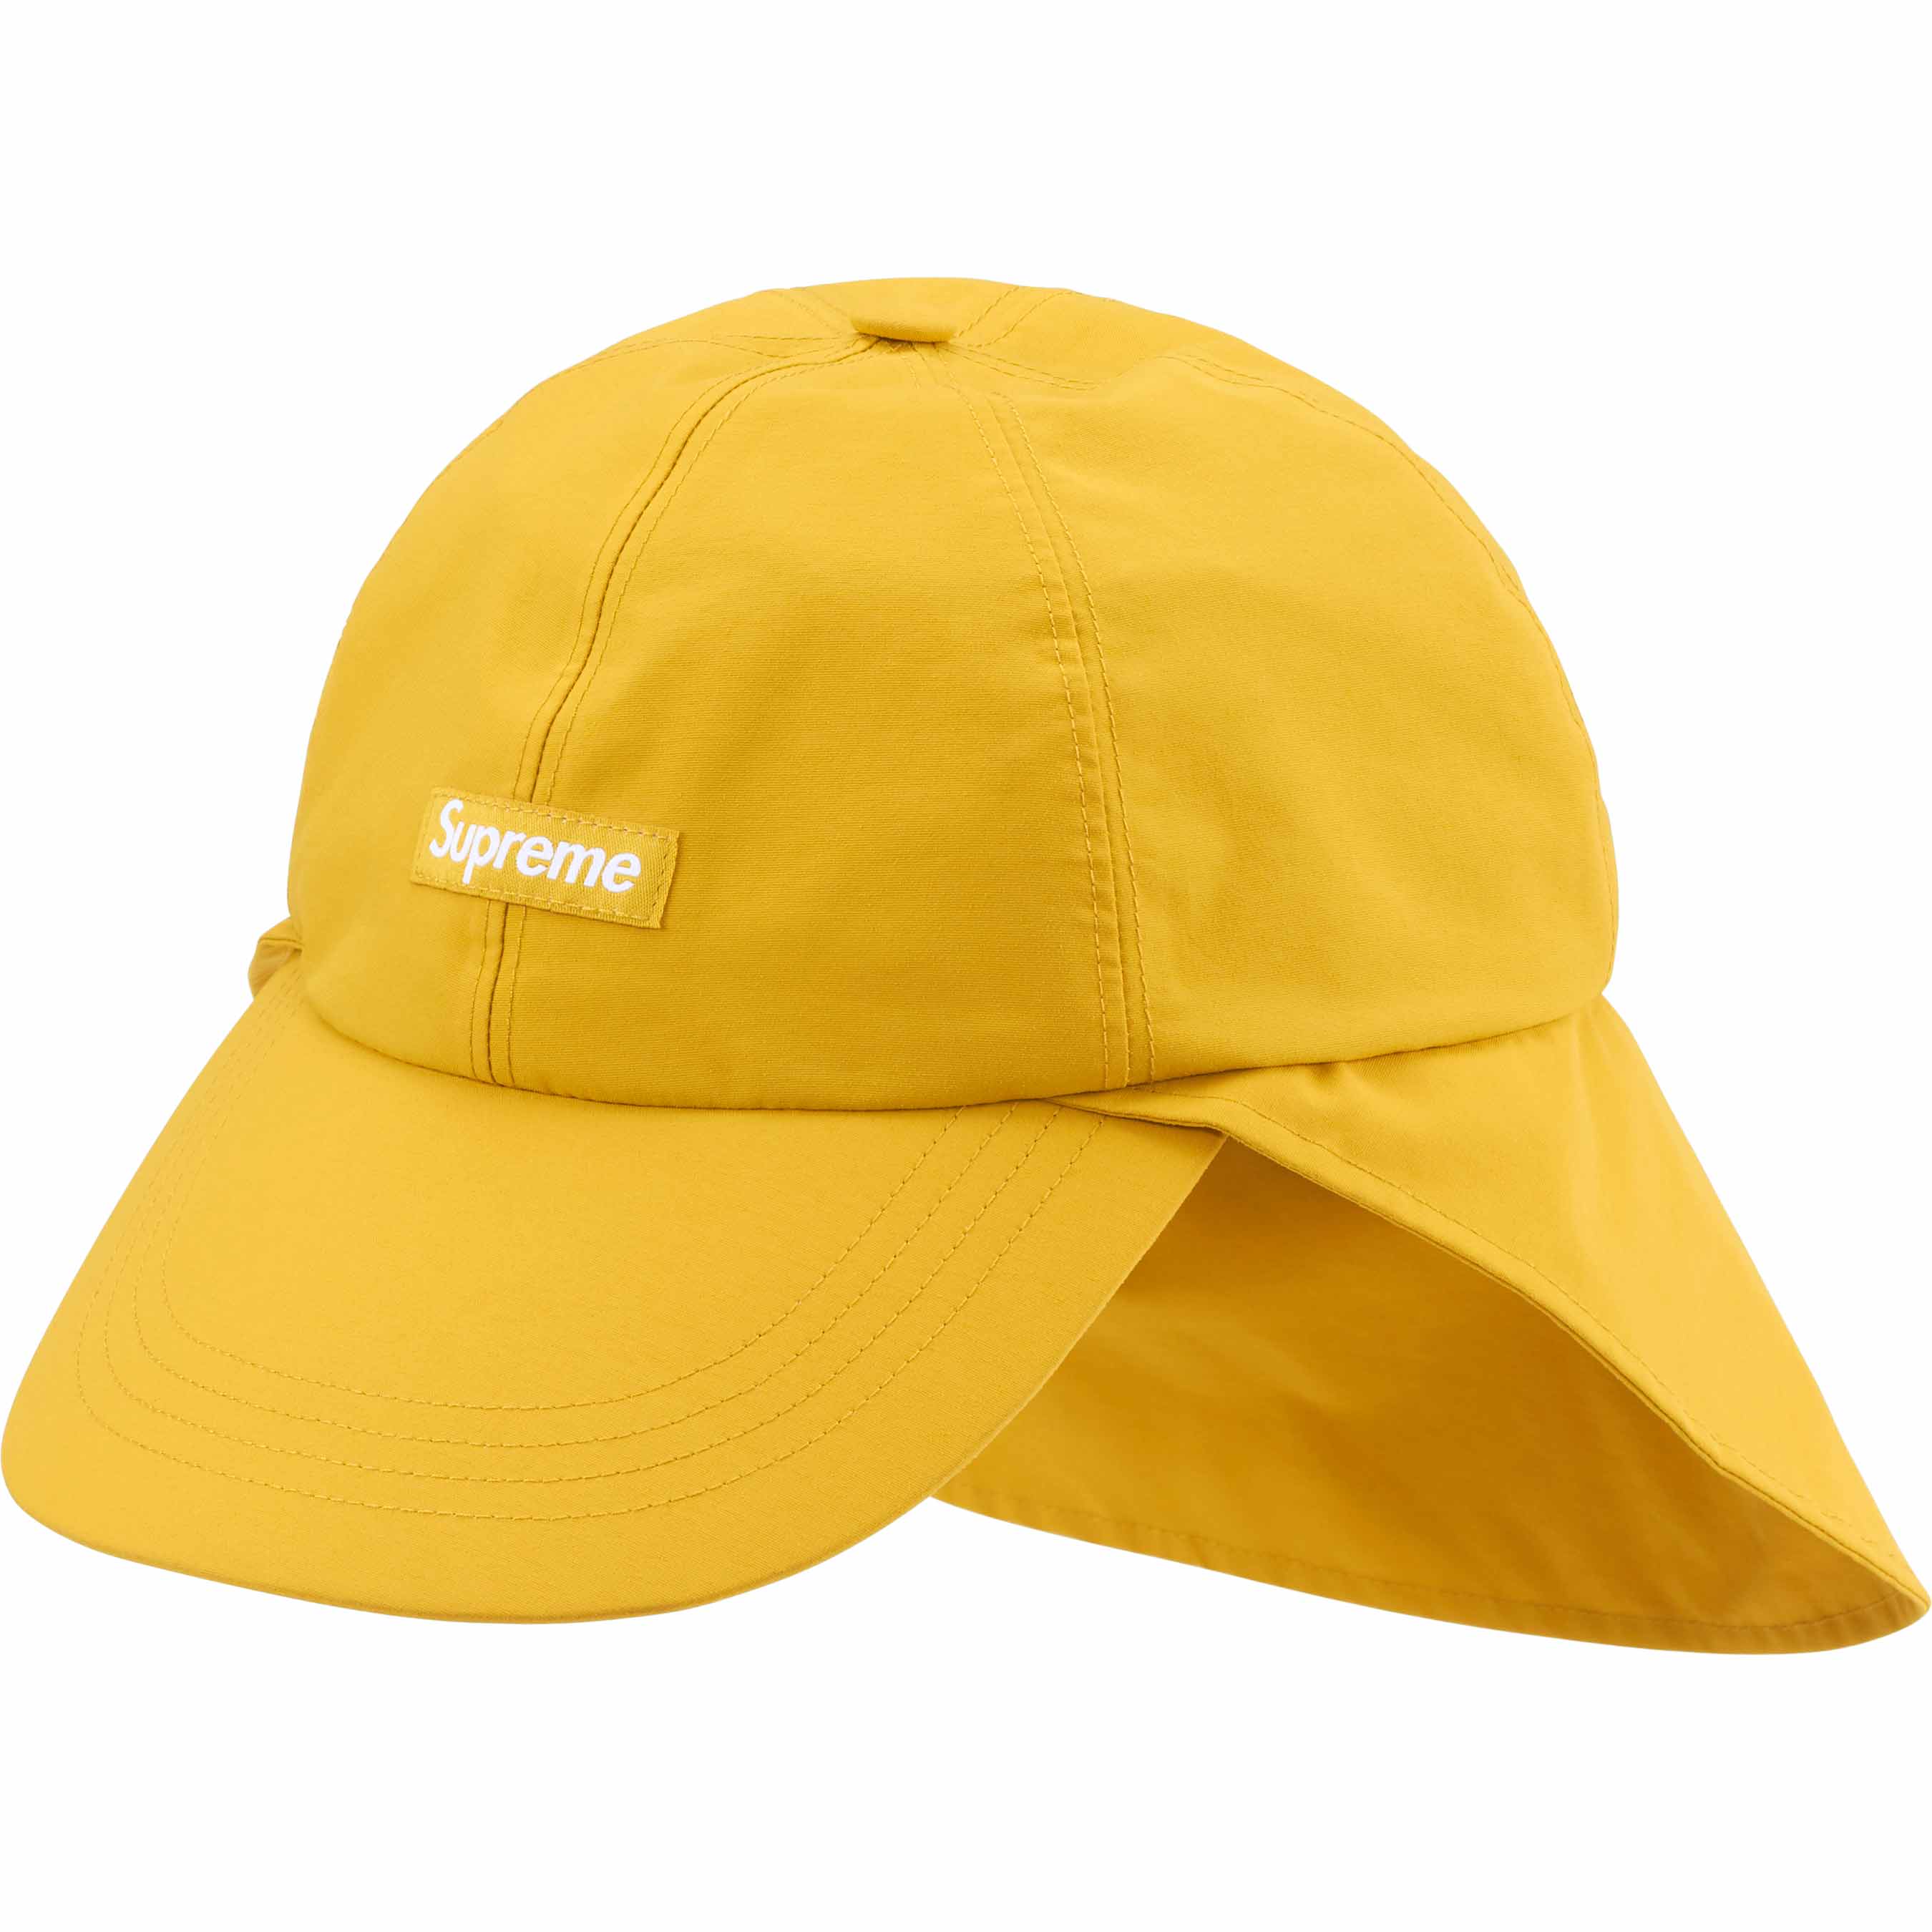 Шапка Supreme GORE-TEX Sunshield, желтый солнцезащитная рыболовная шляпа для мужчин и женщин мужская уличная солнцезащитная дышащая кепка с защитой от уф лучей для альпинизма ры